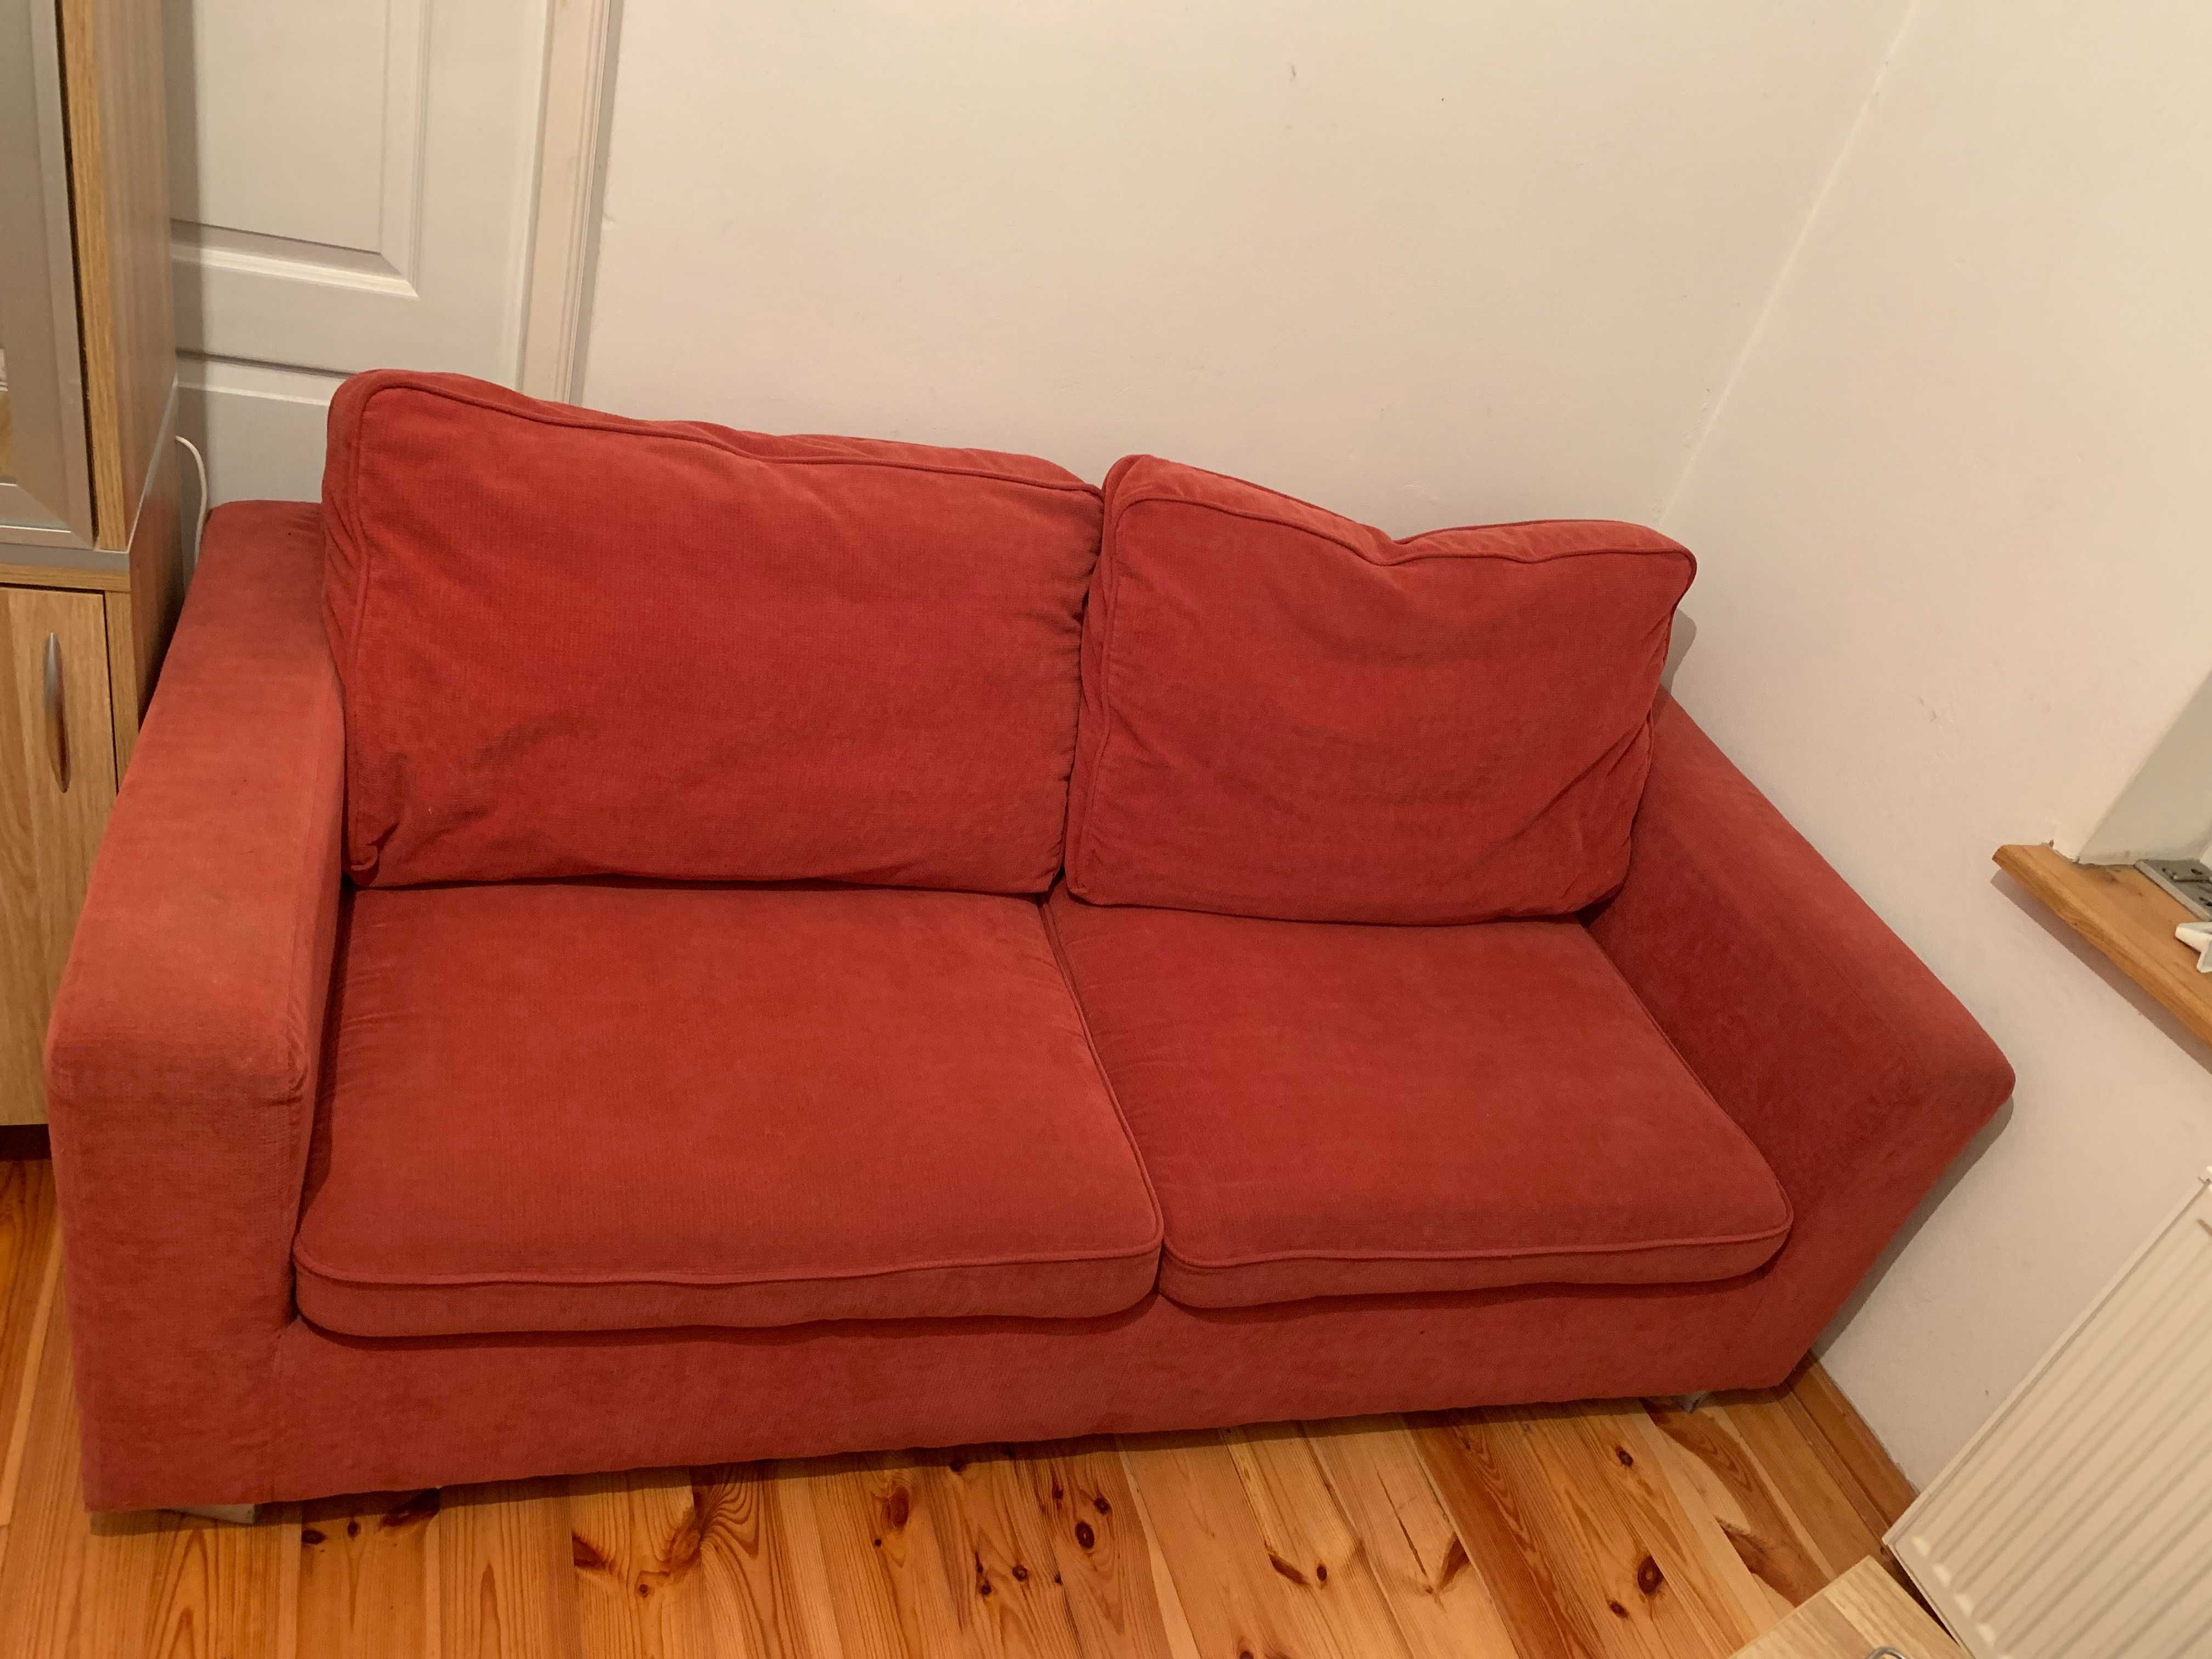 Czerwona kanapa trzyosobowa rozkładana+ dwa czerwone fotele do zestawu